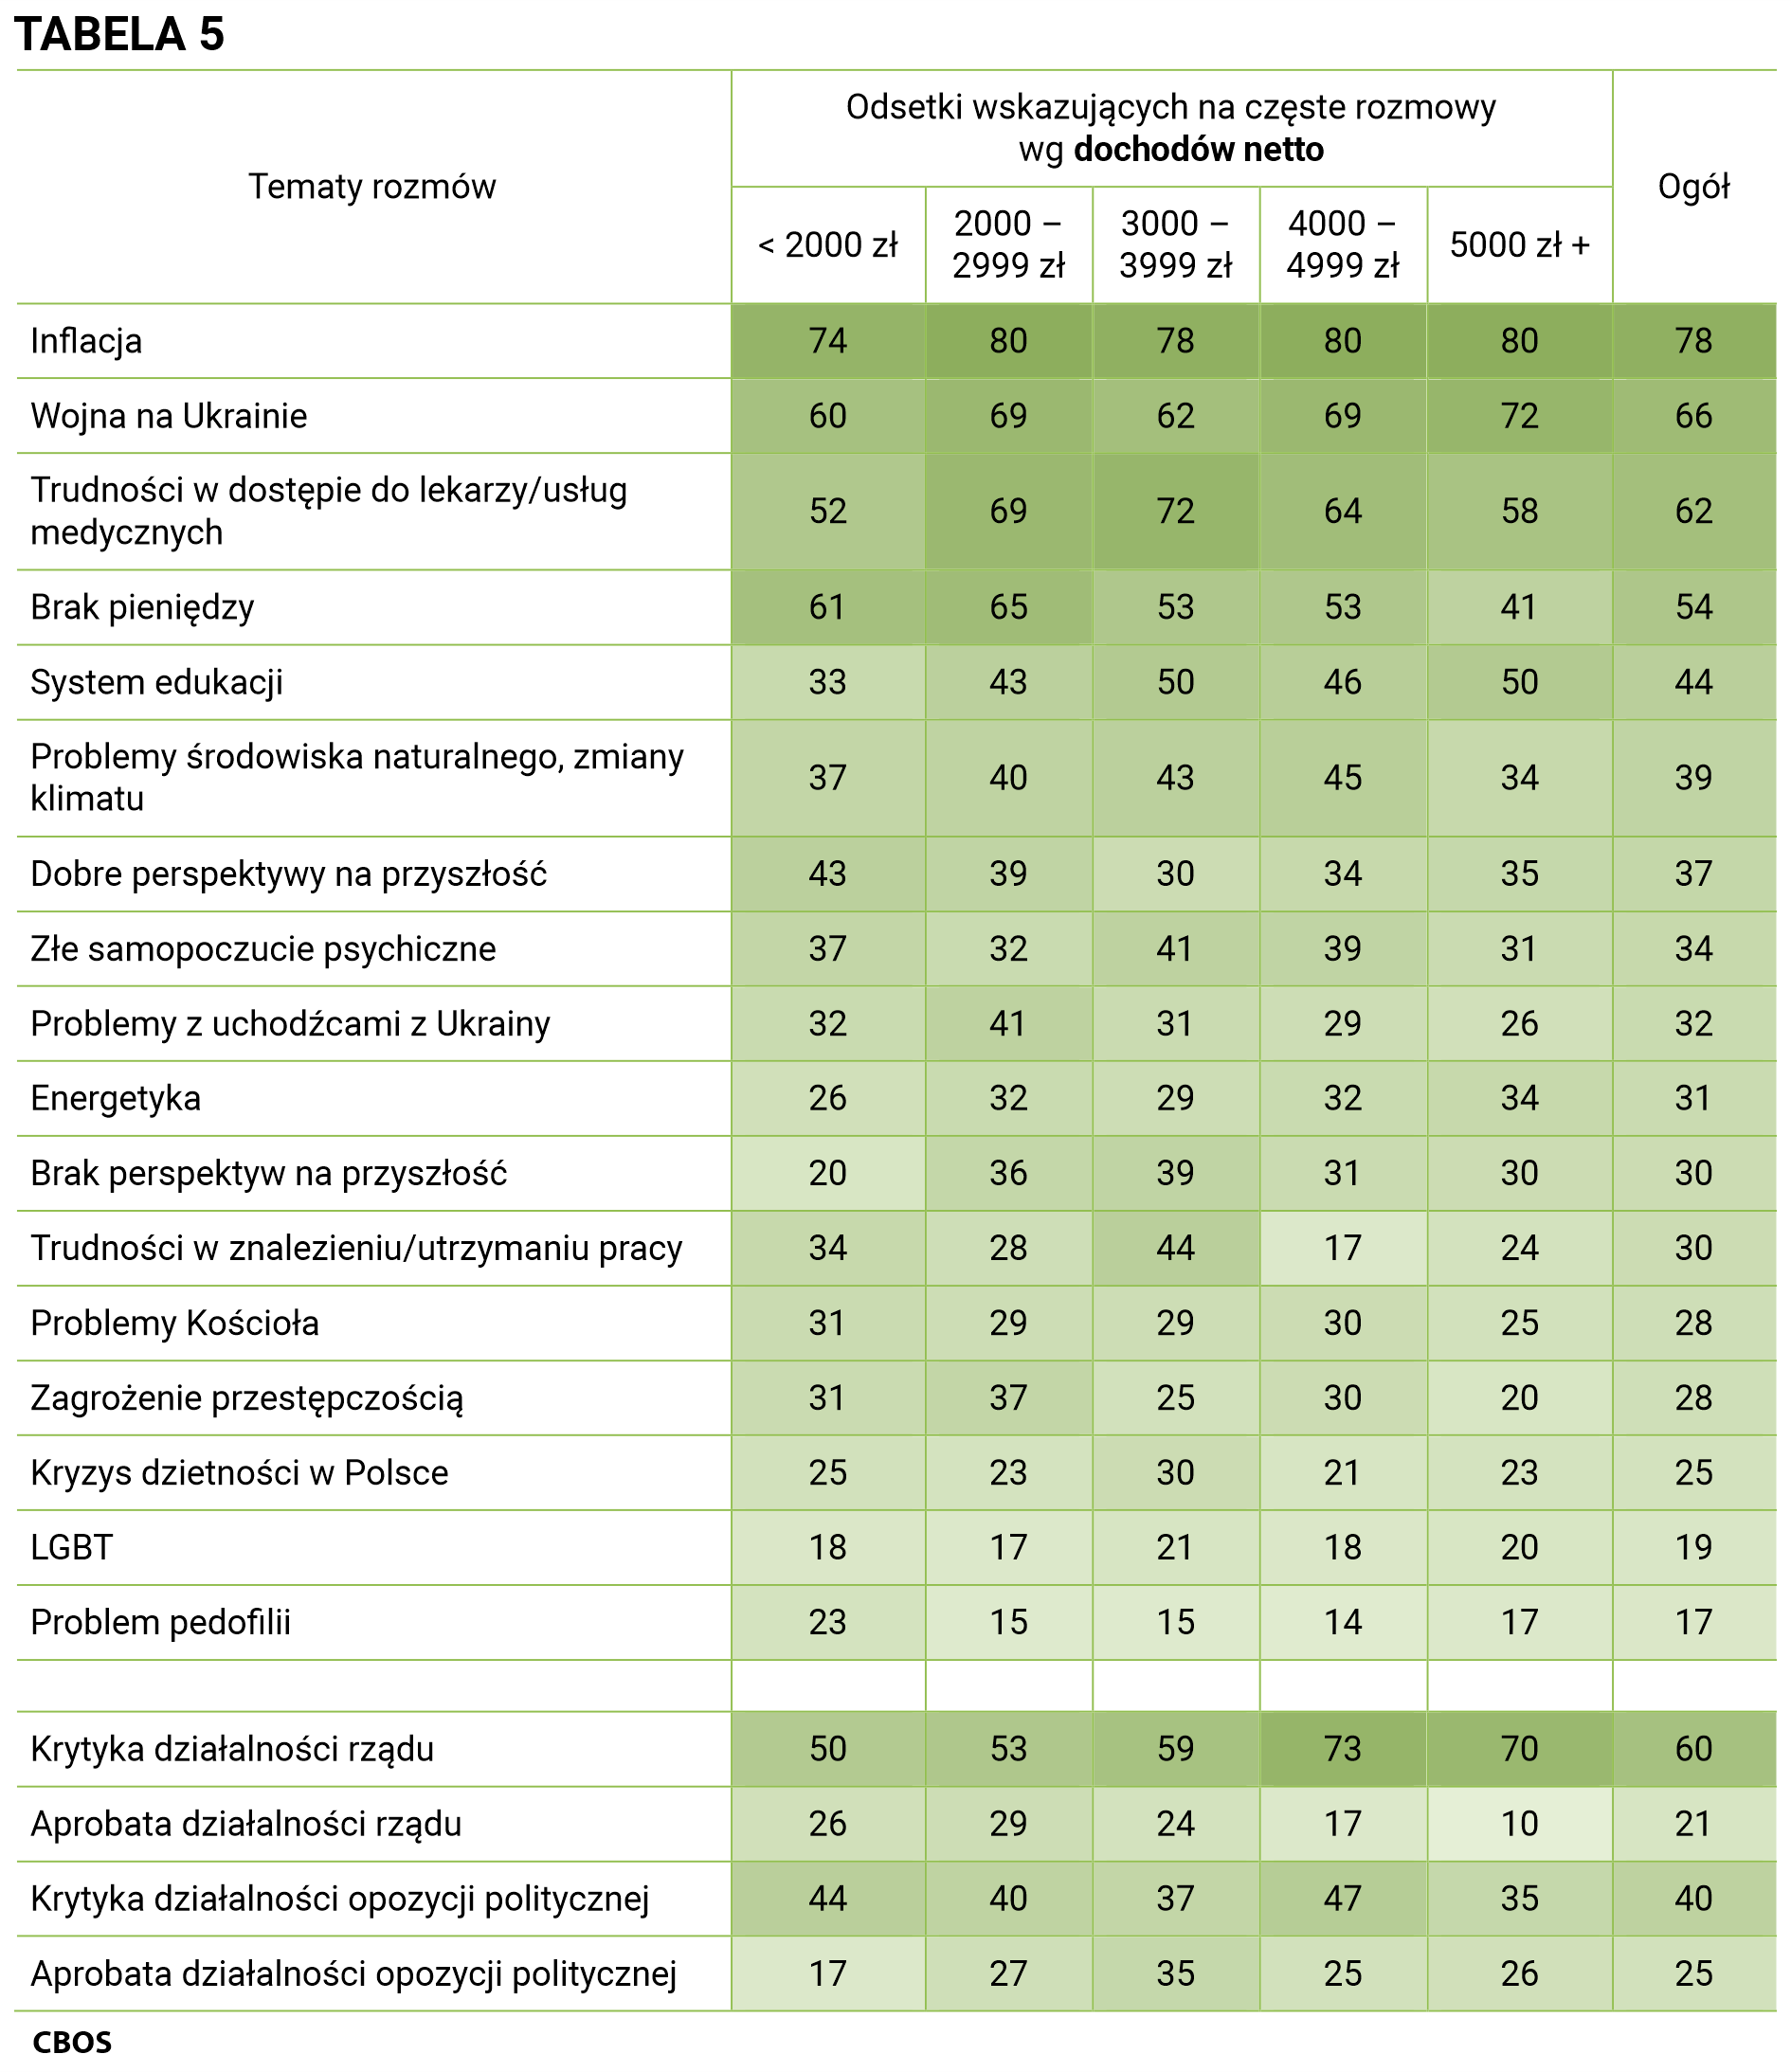 Tabela 5 Tematy rozmów i odsetki wskazujących na częste rozmowy według dochodów netto. Inflacja - Ogół (78%), poniżej 2000 zł (74%), od 2000 zł do 2999 zł (80%), od 3000 zł do 3999 zł (78%), od 4000 do 4999 zł (80%), powyżej 5000 zł (80%); Wojna na Ukrainie - Ogół (66%), poniżej 2000 zł (60%), od 2000 zł do 2999 zł (69%), od 3000 do 3999 zł (62%), od 4000 do 4999 zł (69%), powyżej 5000 zł (72%); Trudności w dostępie do lekarzy/usług medycznych - Ogół (62%), poniżej 2000 zł (52%), od 2000 zł do 2999 zł (69%), od 3000 do 3999 zł (72%), od 4000 do 4999 zł (64%), powyżej 5000 zł (58%); Brak pieniędzy - Ogół (54%), poniżej 2000 zł (61%), od 2000 zł do 2999 zł (65%), od 3000 do 3999 zł (53%), od 4000 do 4999 zł (53%), powyżej 5000 zł (41%); System edukacji - Ogół (44%), poniżej 2000 zł (33%), od 2000 zł do 2999 zł (43%), od 3000 do 3999 zł (50%), od 4000 do 4999 zł (46%), powyżej 5000 zł (50%); Problemy środowiska naturalnego, zmiany klimatu - Ogół (39%), poniżej 2000 zł (37%), od 2000 zł do 2999 zł (40%), od 3000 do 3999 zł (43%), od 4000 do 4999 zł (45%), powyżej 5000 zł (34%); Dobre perspektywy na przyszłość - Ogół (37%), poniżej 2000 zł (43%), od 2000 zł do 2999 zł (39%), od 3000 do 3999 zł (30%), od 4000 do 4999 zł (34%), powyżej 5000 zł (35%); Złe samopoczucie psychiczne - Ogół (34%), poniżej 2000 zł (37%), od 2000 zł do 2999 zł (32%), od 3000 do 3999 zł (41%), od 4000 do 4999 zł (39%), powyżej 5000 zł (31%); Problemy z uchodźcami z Ukrainy - Ogół (32%), poniżej 2000 zł (32%), od 2000 zł do 2999 zł (41%), od 3000 do 3999 zł (31%), od 4000 do 4999 zł (29%), powyżej 5000 zł (26%); Energetyka - Ogół (31%), poniżej 2000 zł (26%), od 2000 zł do 2999 zł (32%), od 3000 do 3999 zł (29%), od 4000 do 4999 zł (32%), powyżej 5000 zł (34%); Brak perspektyw na przyszłość - Ogół (30%), poniżej 2000 zł (20%), od 2000 zł do 2999 zł (36%), od 3000 do 3999 zł (39%), od 4000 do 4999 zł (31%), powyżej 5000 zł (30%); Trudności w znalezieniu/utrzymaniu pracy - Ogół (30%), poniżej 2000 zł (34%), od 2000 zł do 2999 zł (28%), od 3000 do 3999 zł (44%), od 4000 do 4999 zł (17%), powyżej 5000 zł (24%); Problemy Kościoła - Ogół (28%), poniżej 2000 zł (31%), od 2000 zł do 2999 zł (29%), od 3000 do 3999 zł (29%), od 4000 do 4999 zł (30%), powyżej 5000 zł (25%); Zagrożenie przestępczością - Ogół (28%), poniżej 2000 zł (31%), od 2000 zł do 2999 zł (37%), od 3000 do 3999 zł (25%), od 4000 do 4999 zł (30%), powyżej 5000 zł (20%); Kryzys dzietności w Polsce - Ogół (25%), poniżej 2000 zł (25%), od 2000 zł do 2999 zł (23%), od 3000 do 3999 zł (30%), od 4000 do 4999 zł (21%), powyżej 5000 zł (23%); LGBT - Ogół (19%), poniżej 2000 zł (18%), od 2000 zł do 2999 zł (17%), od 3000 do 3999 zł (21%), od 4000 do 4999 zł (18%), powyżej 5000 zł (20%); Problem pedofilii - Ogół (17%), poniżej 2000 zł (23%), od 2000 zł do 2999 zł (15%), od 3000 do 3999 zł (15%), od 4000 do 4999 zł (14%), powyżej 5000 zł (17%); Krytyka działalności rządu - Ogół (60%), poniżej 2000 zł (50%), od 2000 zł do 2999 zł (53%), od 3000 do 3999 zł (59%), od 4000 do 4999 zł (73%), powyżej 5000 zł (70%); Aprobata działalności rządu - Ogół (21%), poniżej 2000 zł (26%), od 2000 zł do 2999 zł (29%), od 3000 do 3999 zł (24%), od 4000 do 4999 zł (17%), powyżej 5000 zł (10%); Krytyka działalności opozycji politycznej - Ogół (40%), poniżej 2000 zł (44%), od 2000 zł do 2999 zł (40%), od 3000 do 3999 zł (37%), od 4000 do 4999 zł (47%), powyżej 5000 zł (35%); Aprobata działalności opozycji politycznej - Ogół (25%), poniżej 2000 zł (17%), od 2000 zł do 2999 zł (27%), od 3000 do 3999 zł (35%), od 4000 do 4999 zł (25%), powyżej 5000 zł (26%).